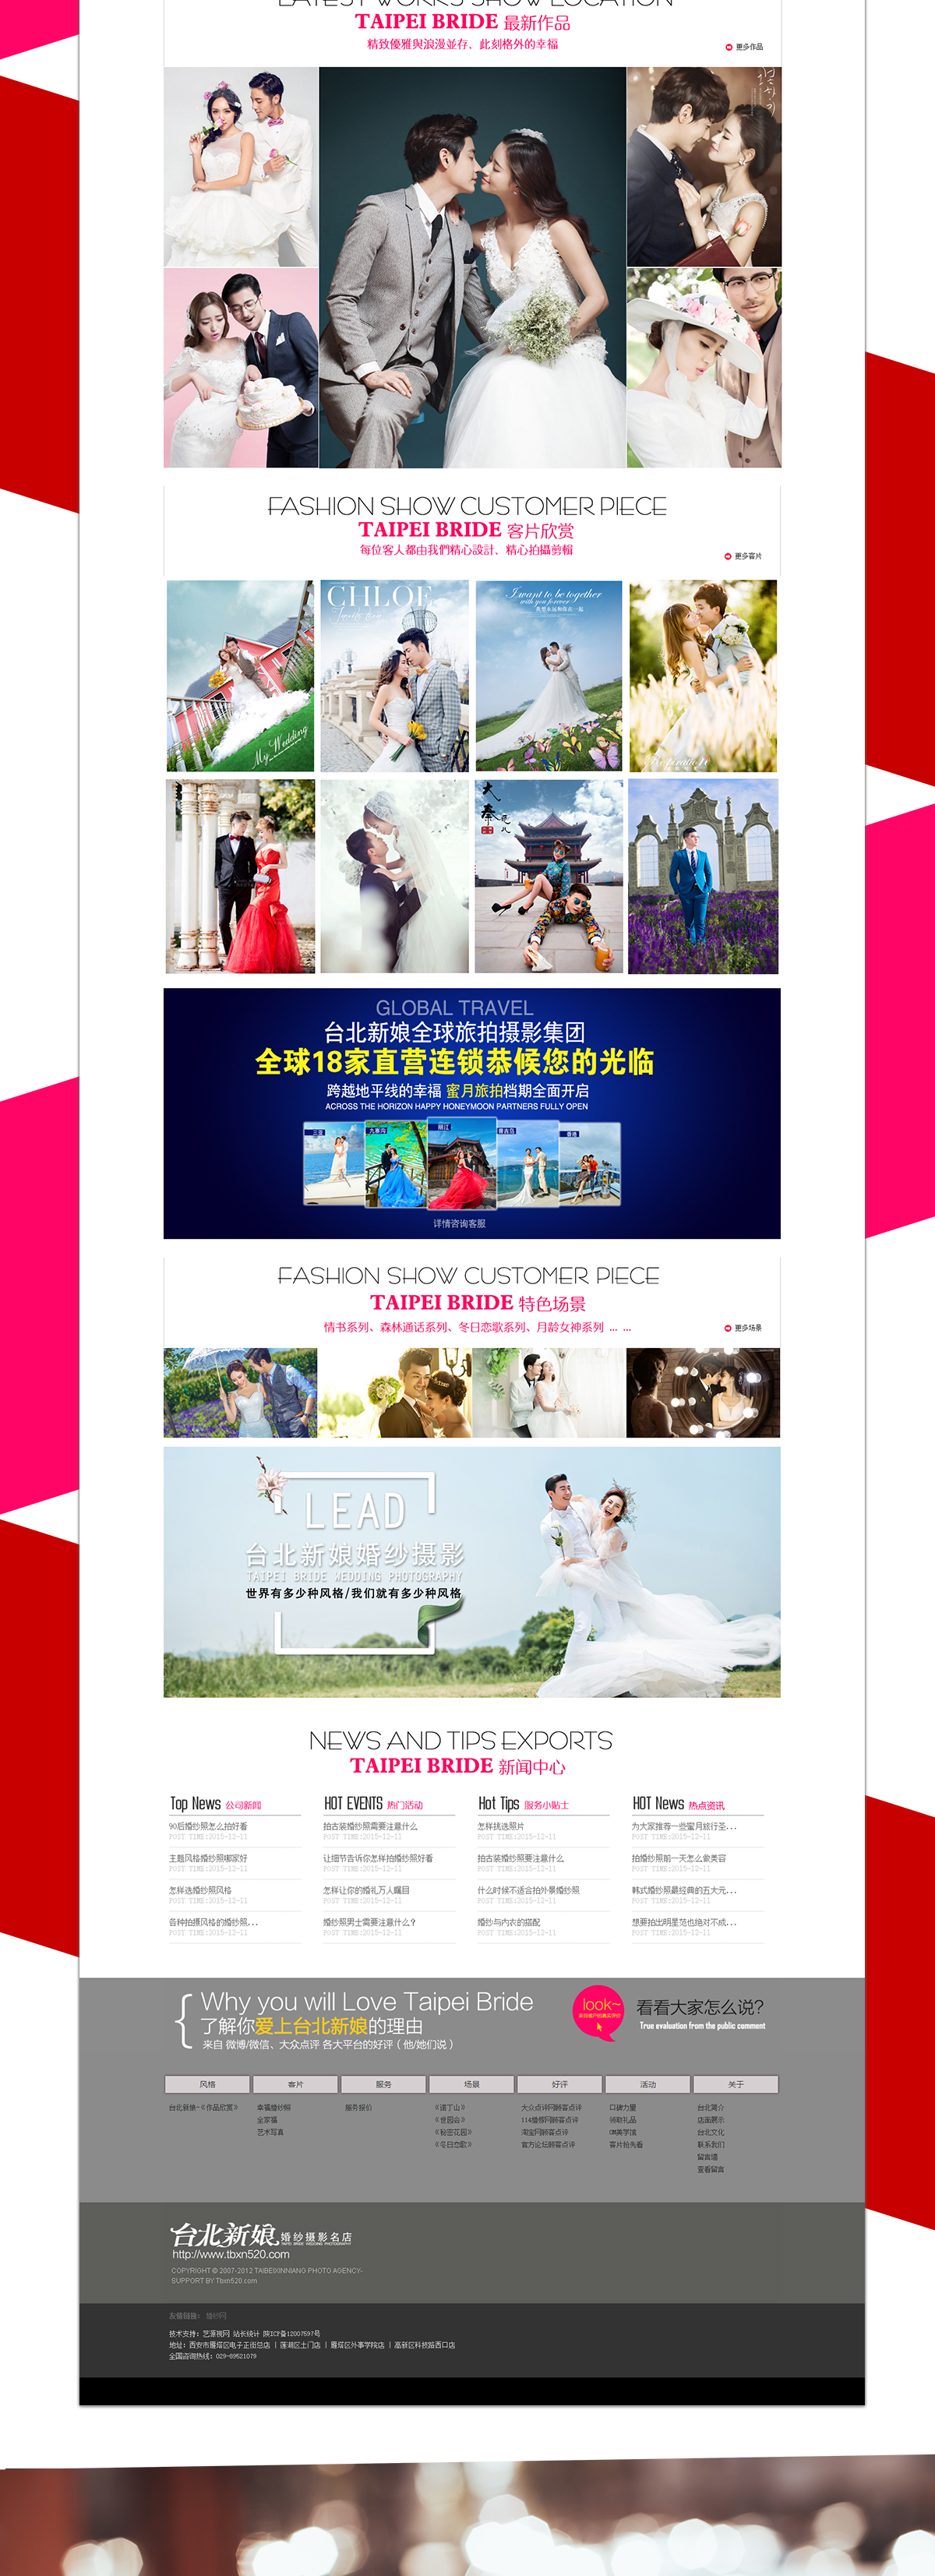 台北新娘官网网站首页效果图